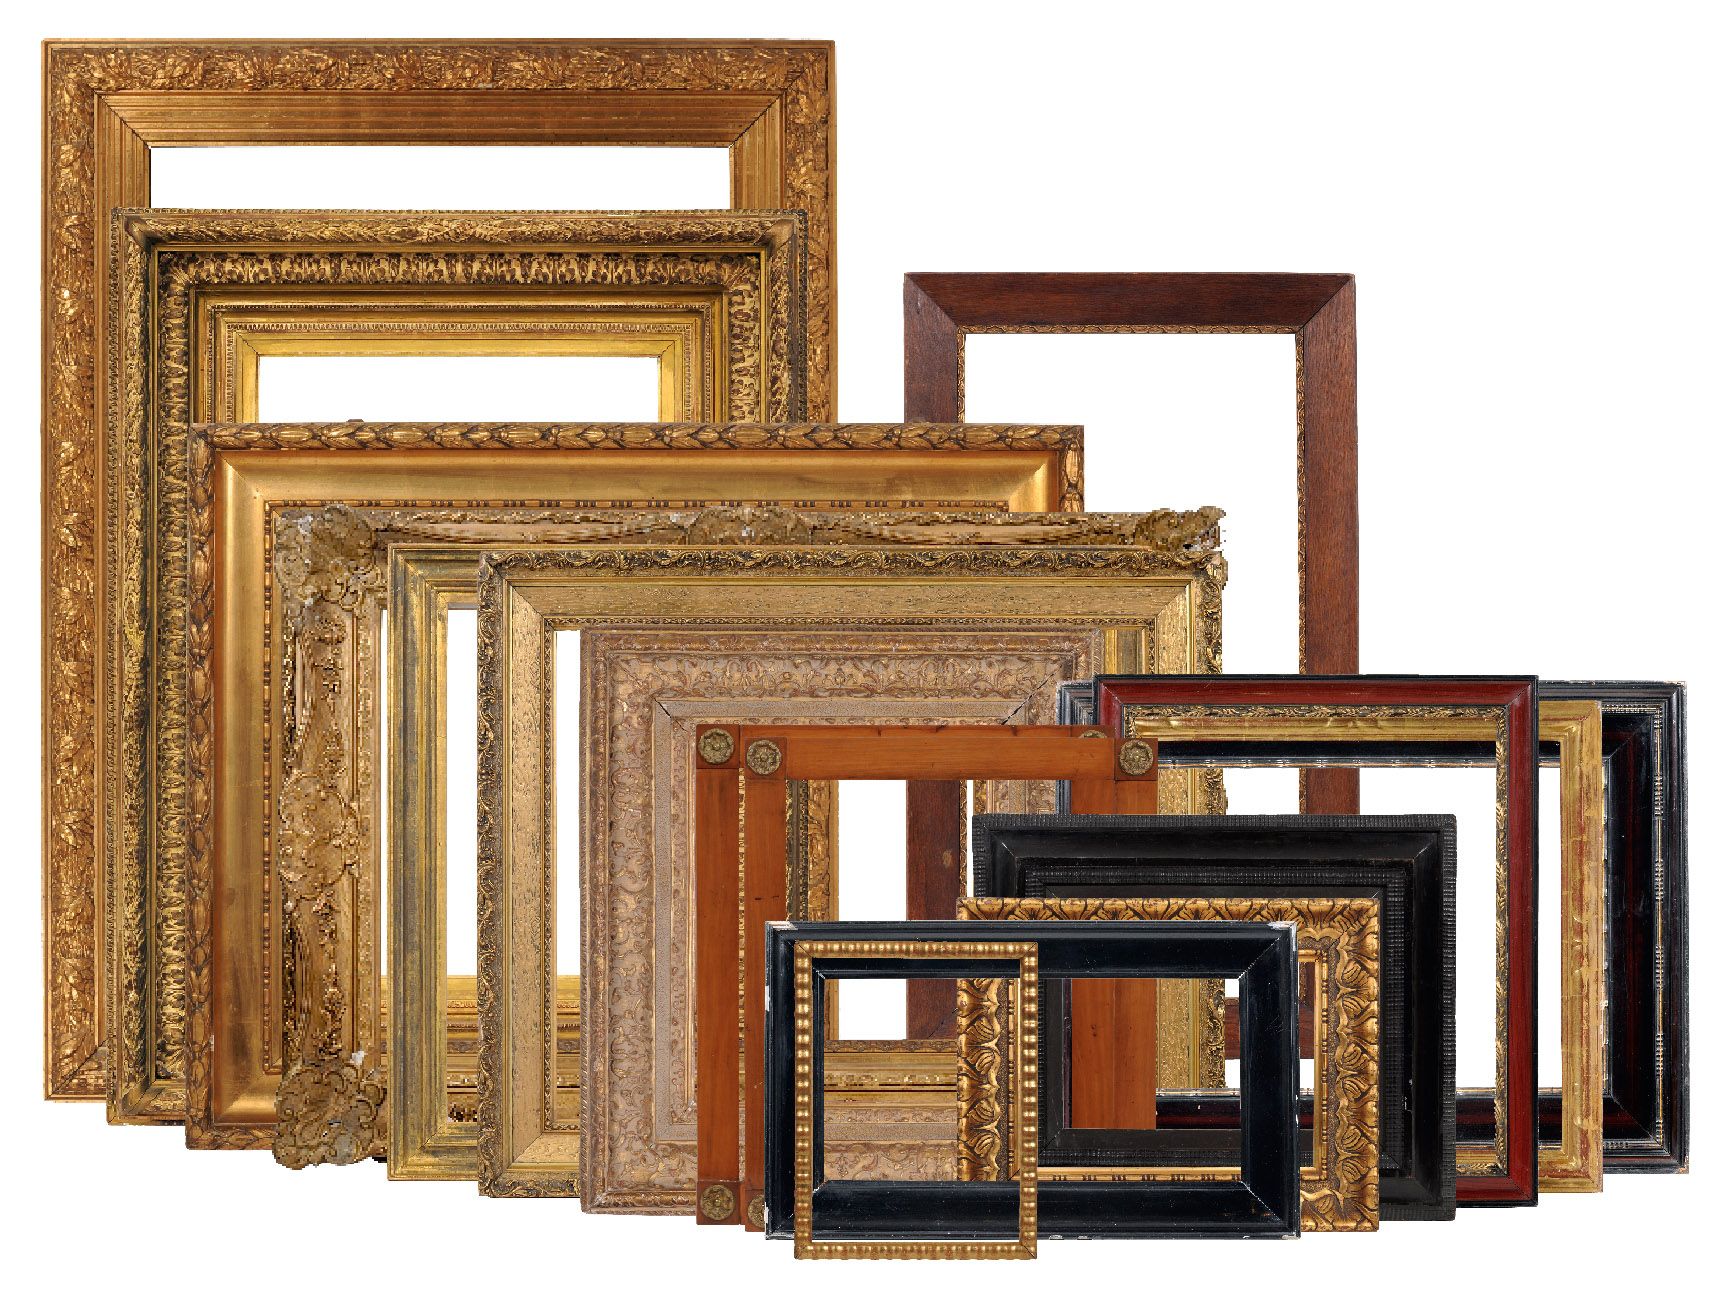 Großer Rahmen im Louis-XV-Stil. 2. H. 19. Jh. Holz, masseverziert und mit goldfarbenem Überzug. - Image 4 of 4